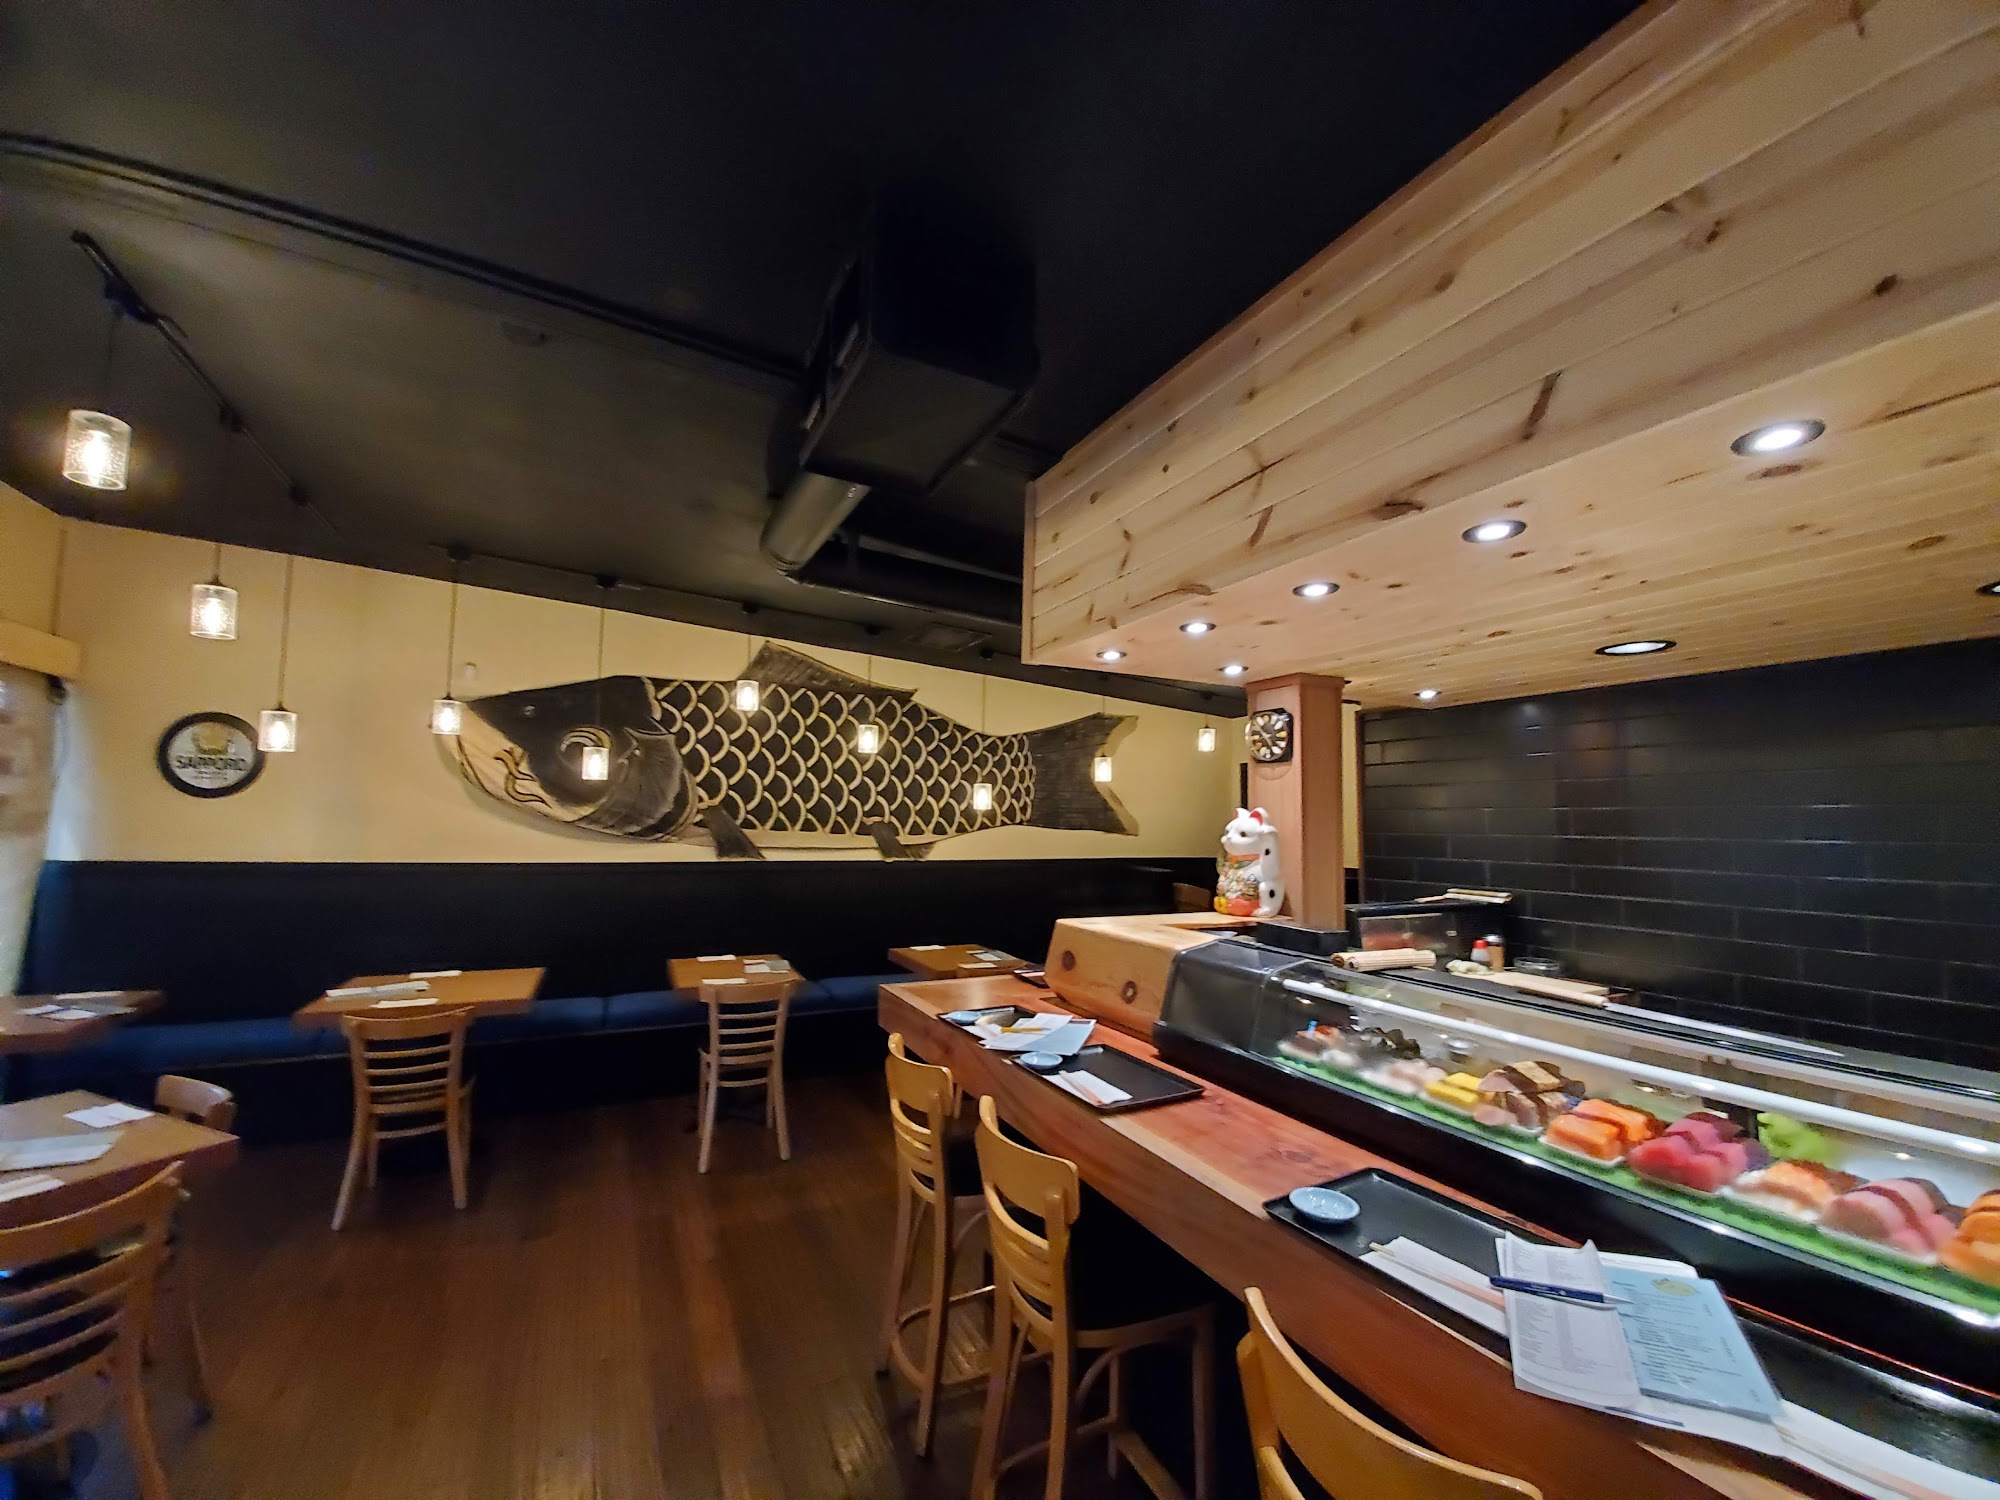 Yoko's Japanese Restaurant & Sushi Bar